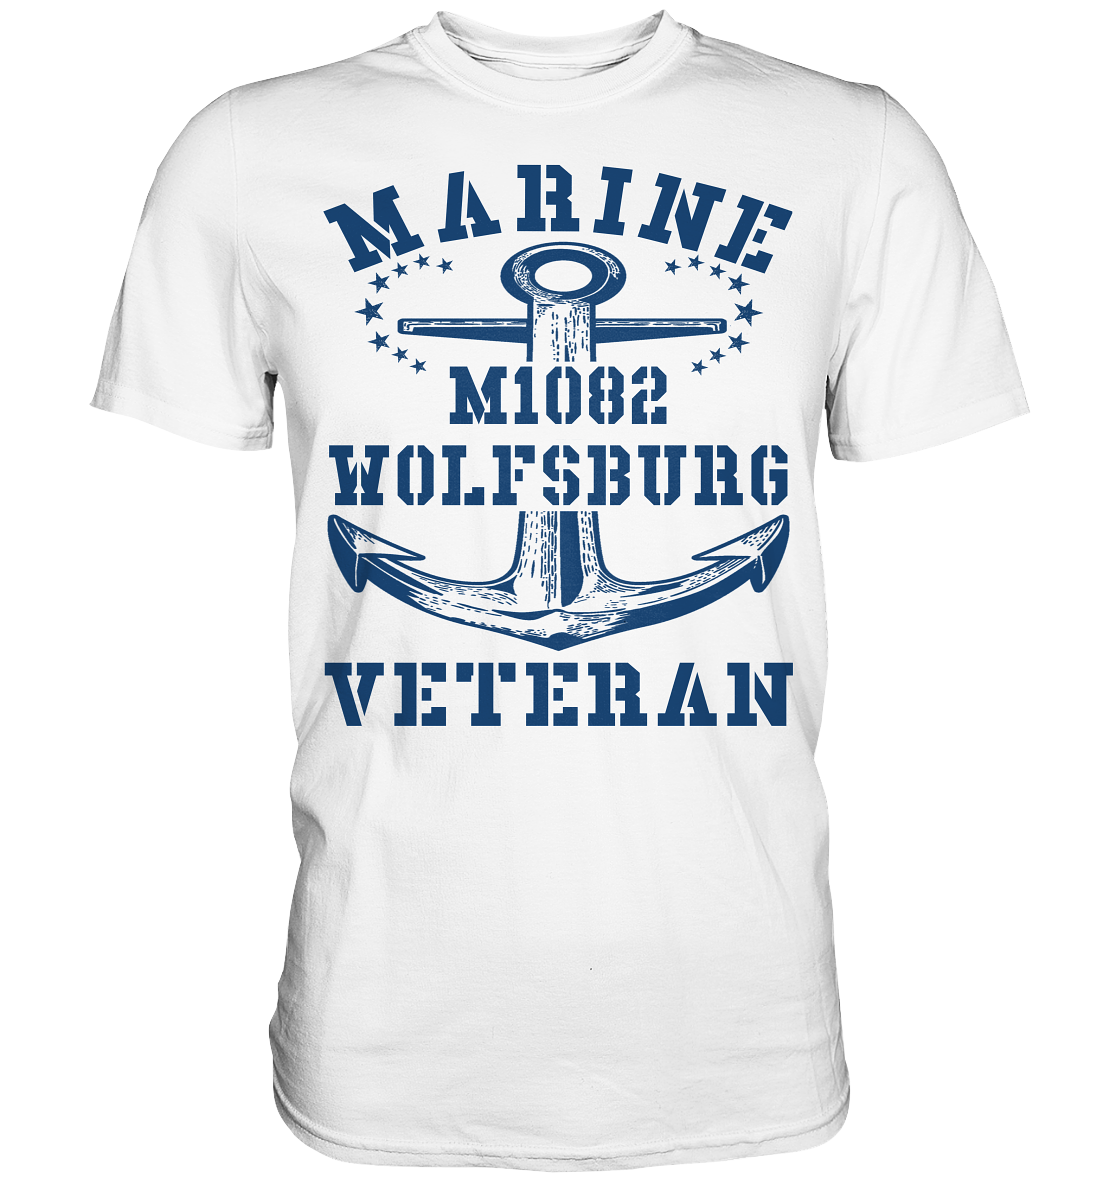 MARINE VETERAN M1082 WOLFSBURG - Premium Shirt